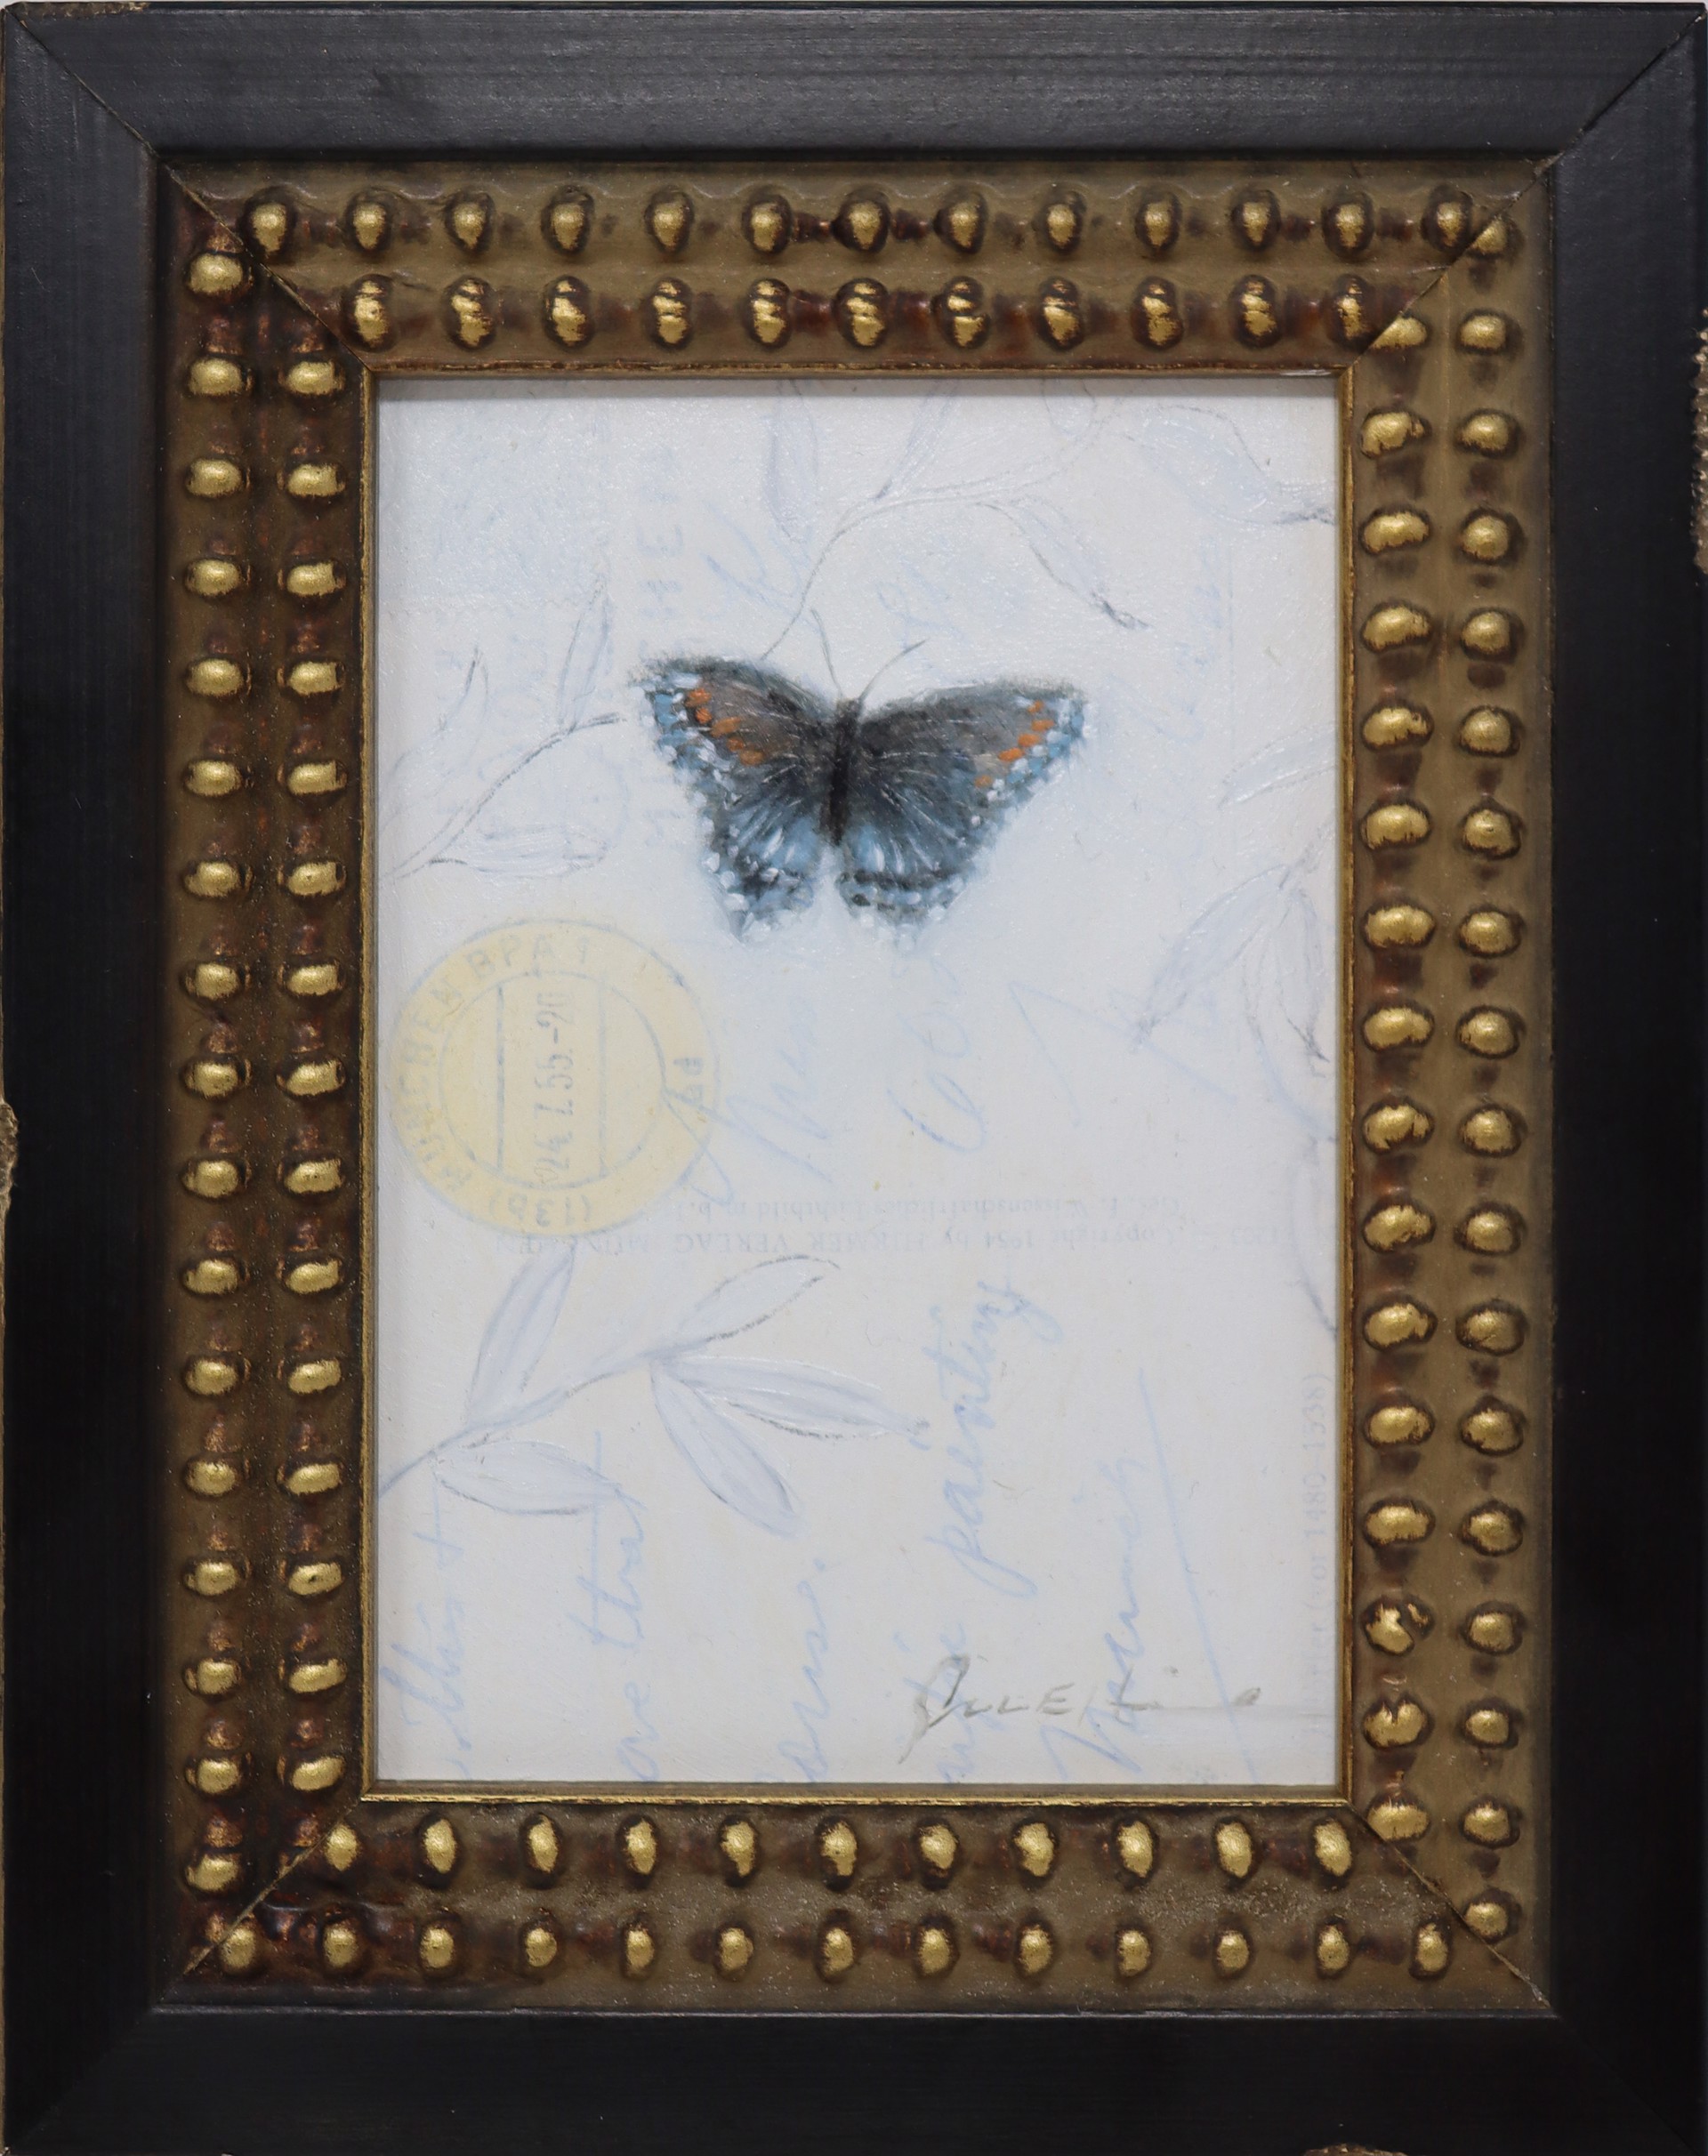 Butterfly by Scott E. Hill